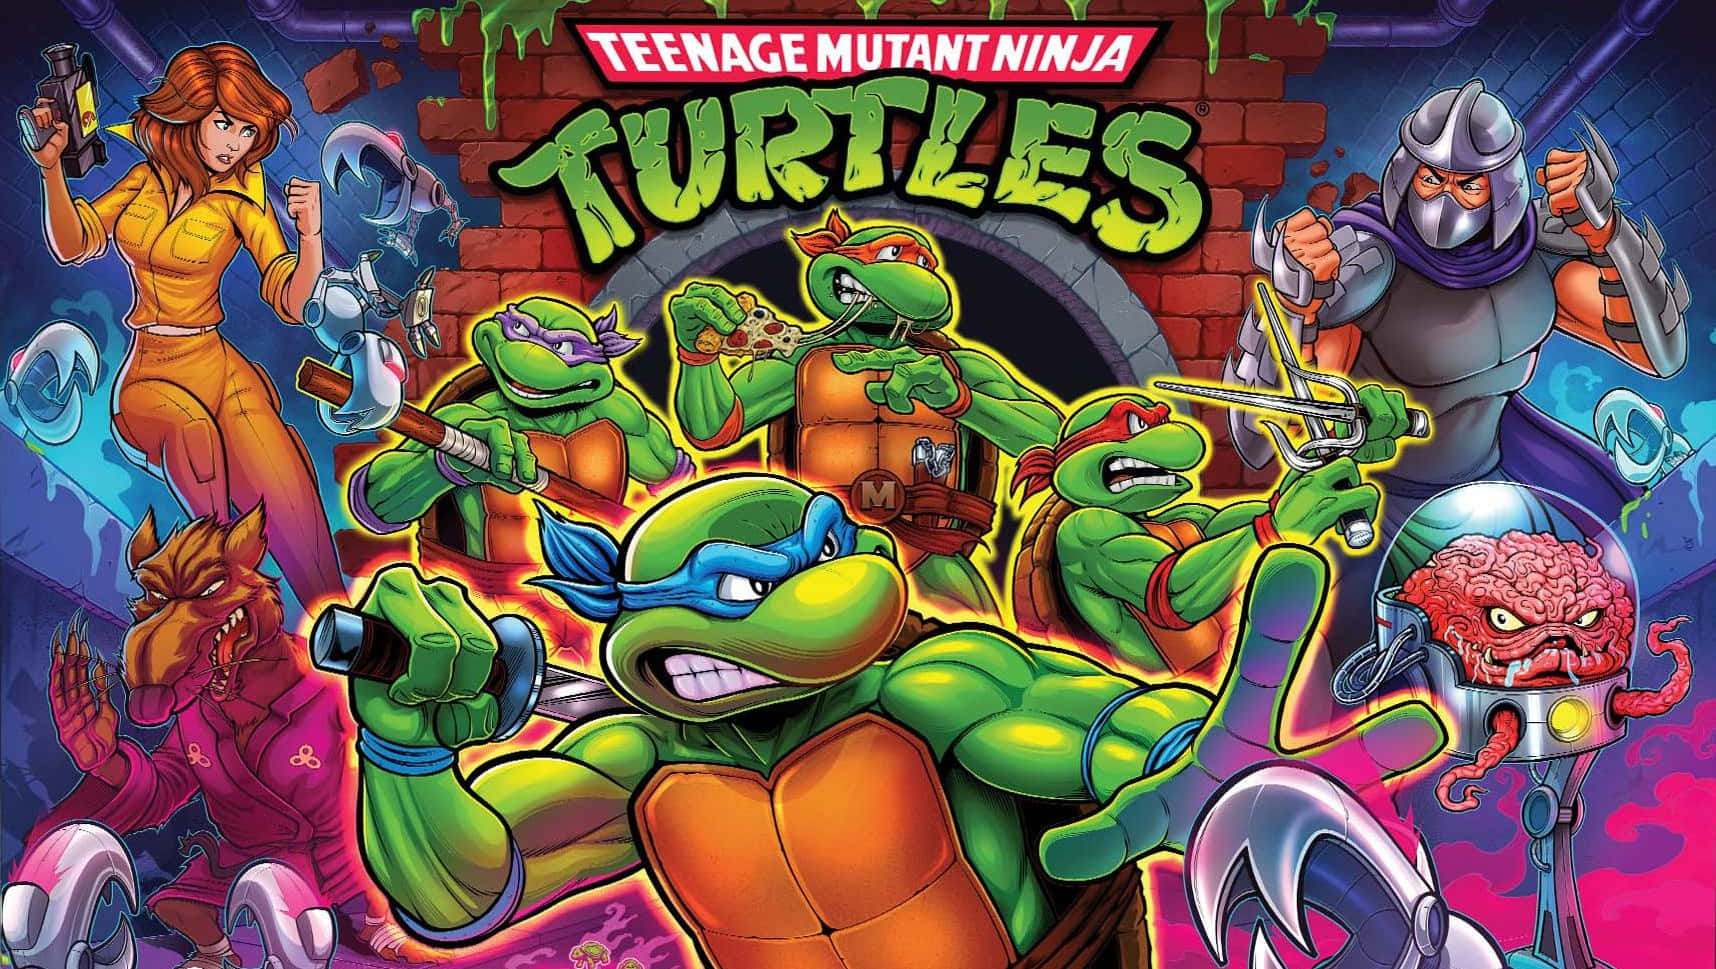 The iconic Teenage Ninja Turtles team together